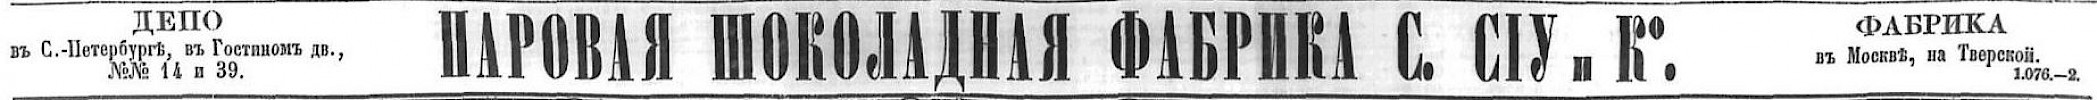 Реклама в «Московские ведомости» №30 [1869]